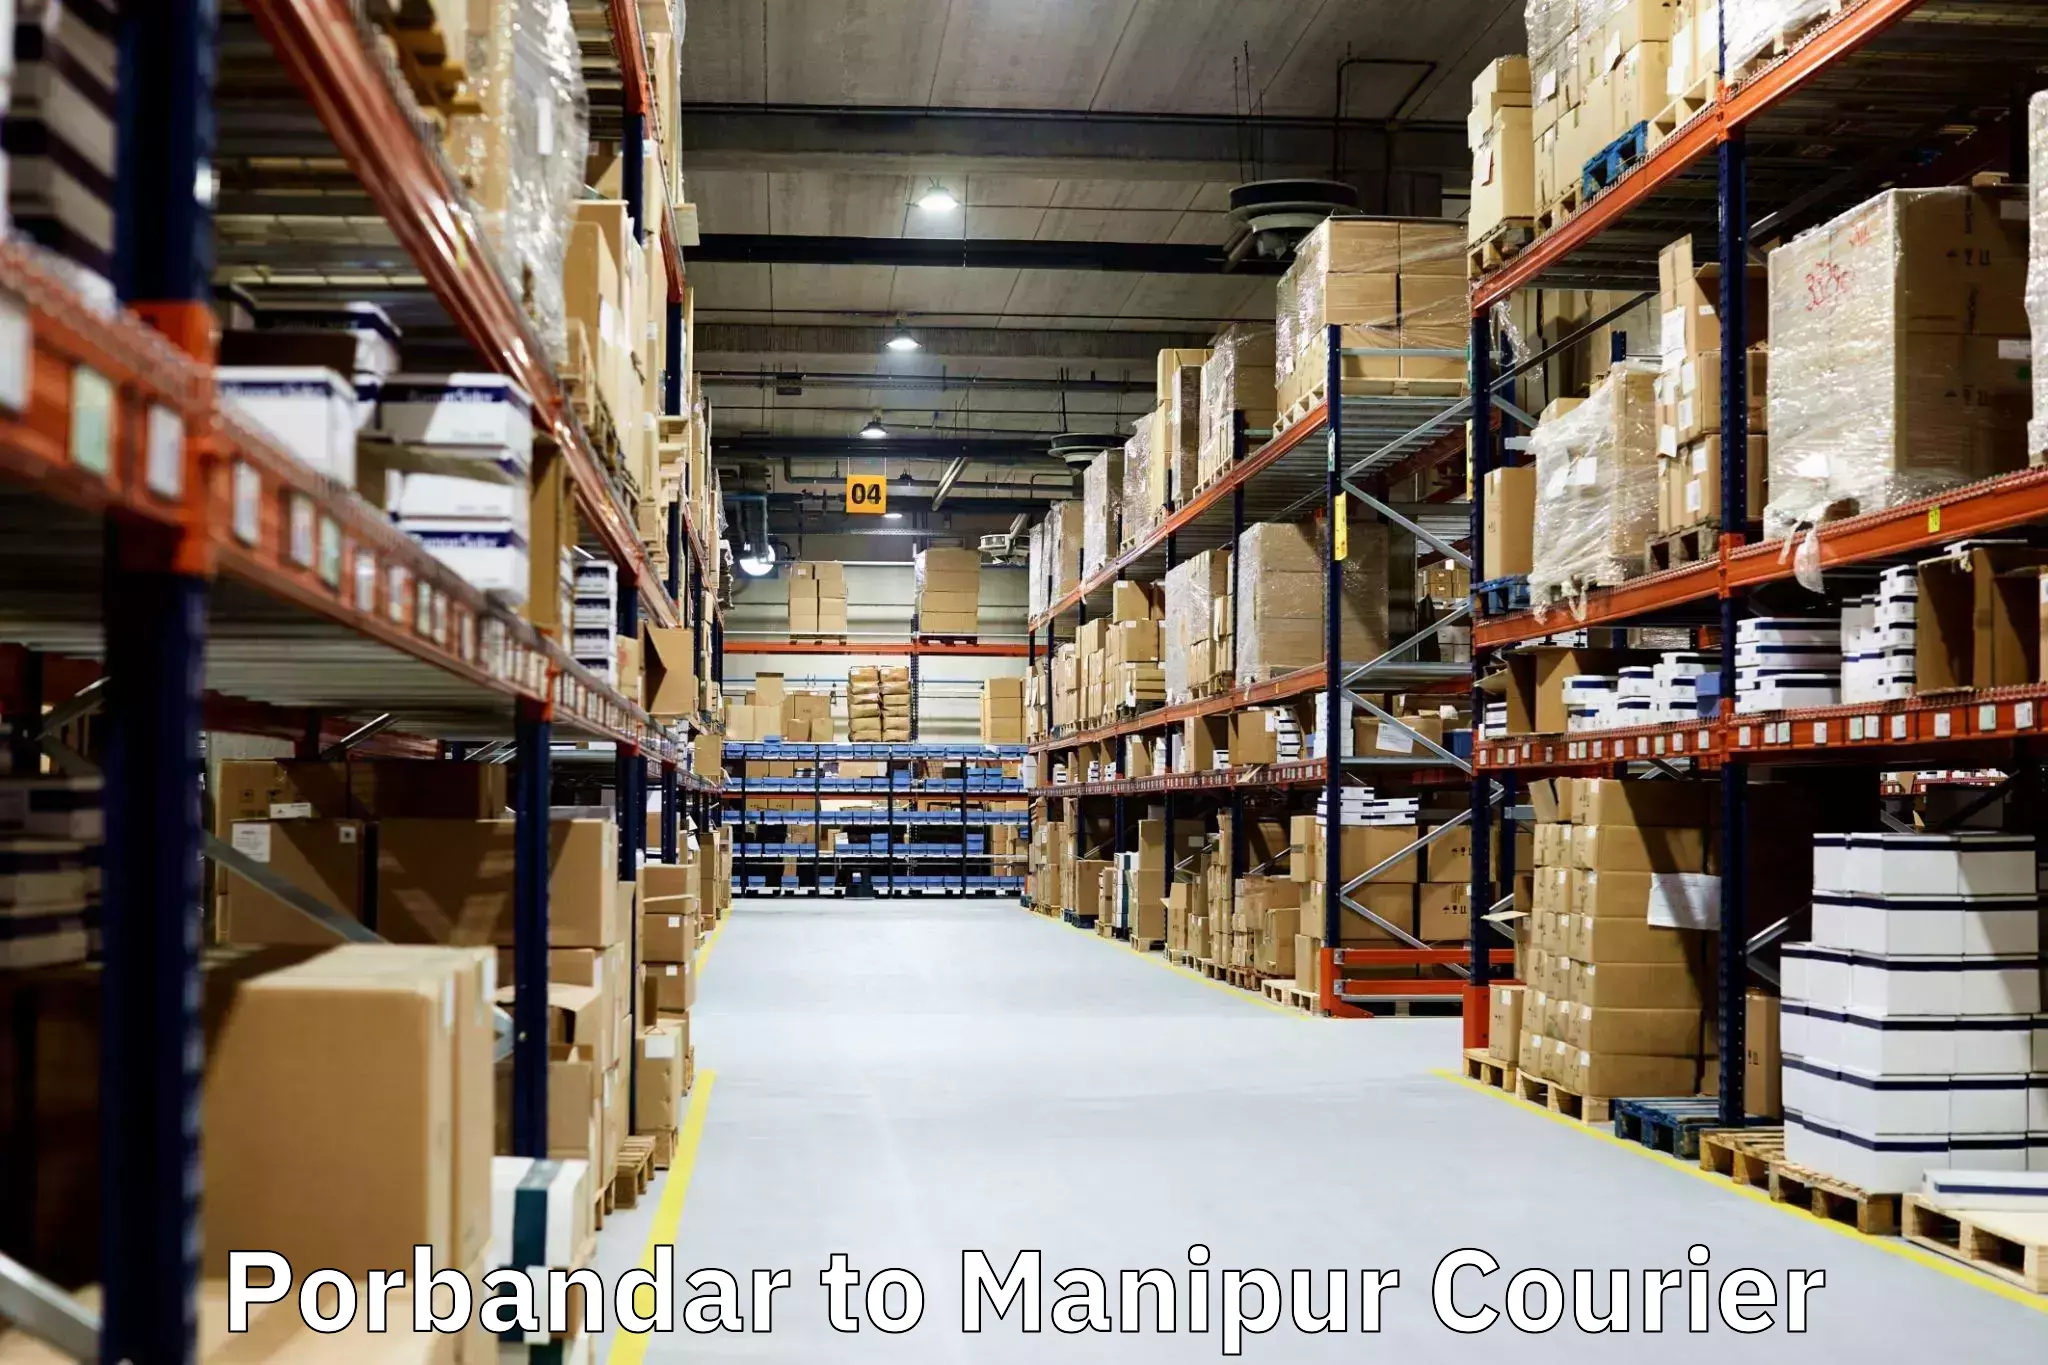 Furniture delivery service Porbandar to Imphal